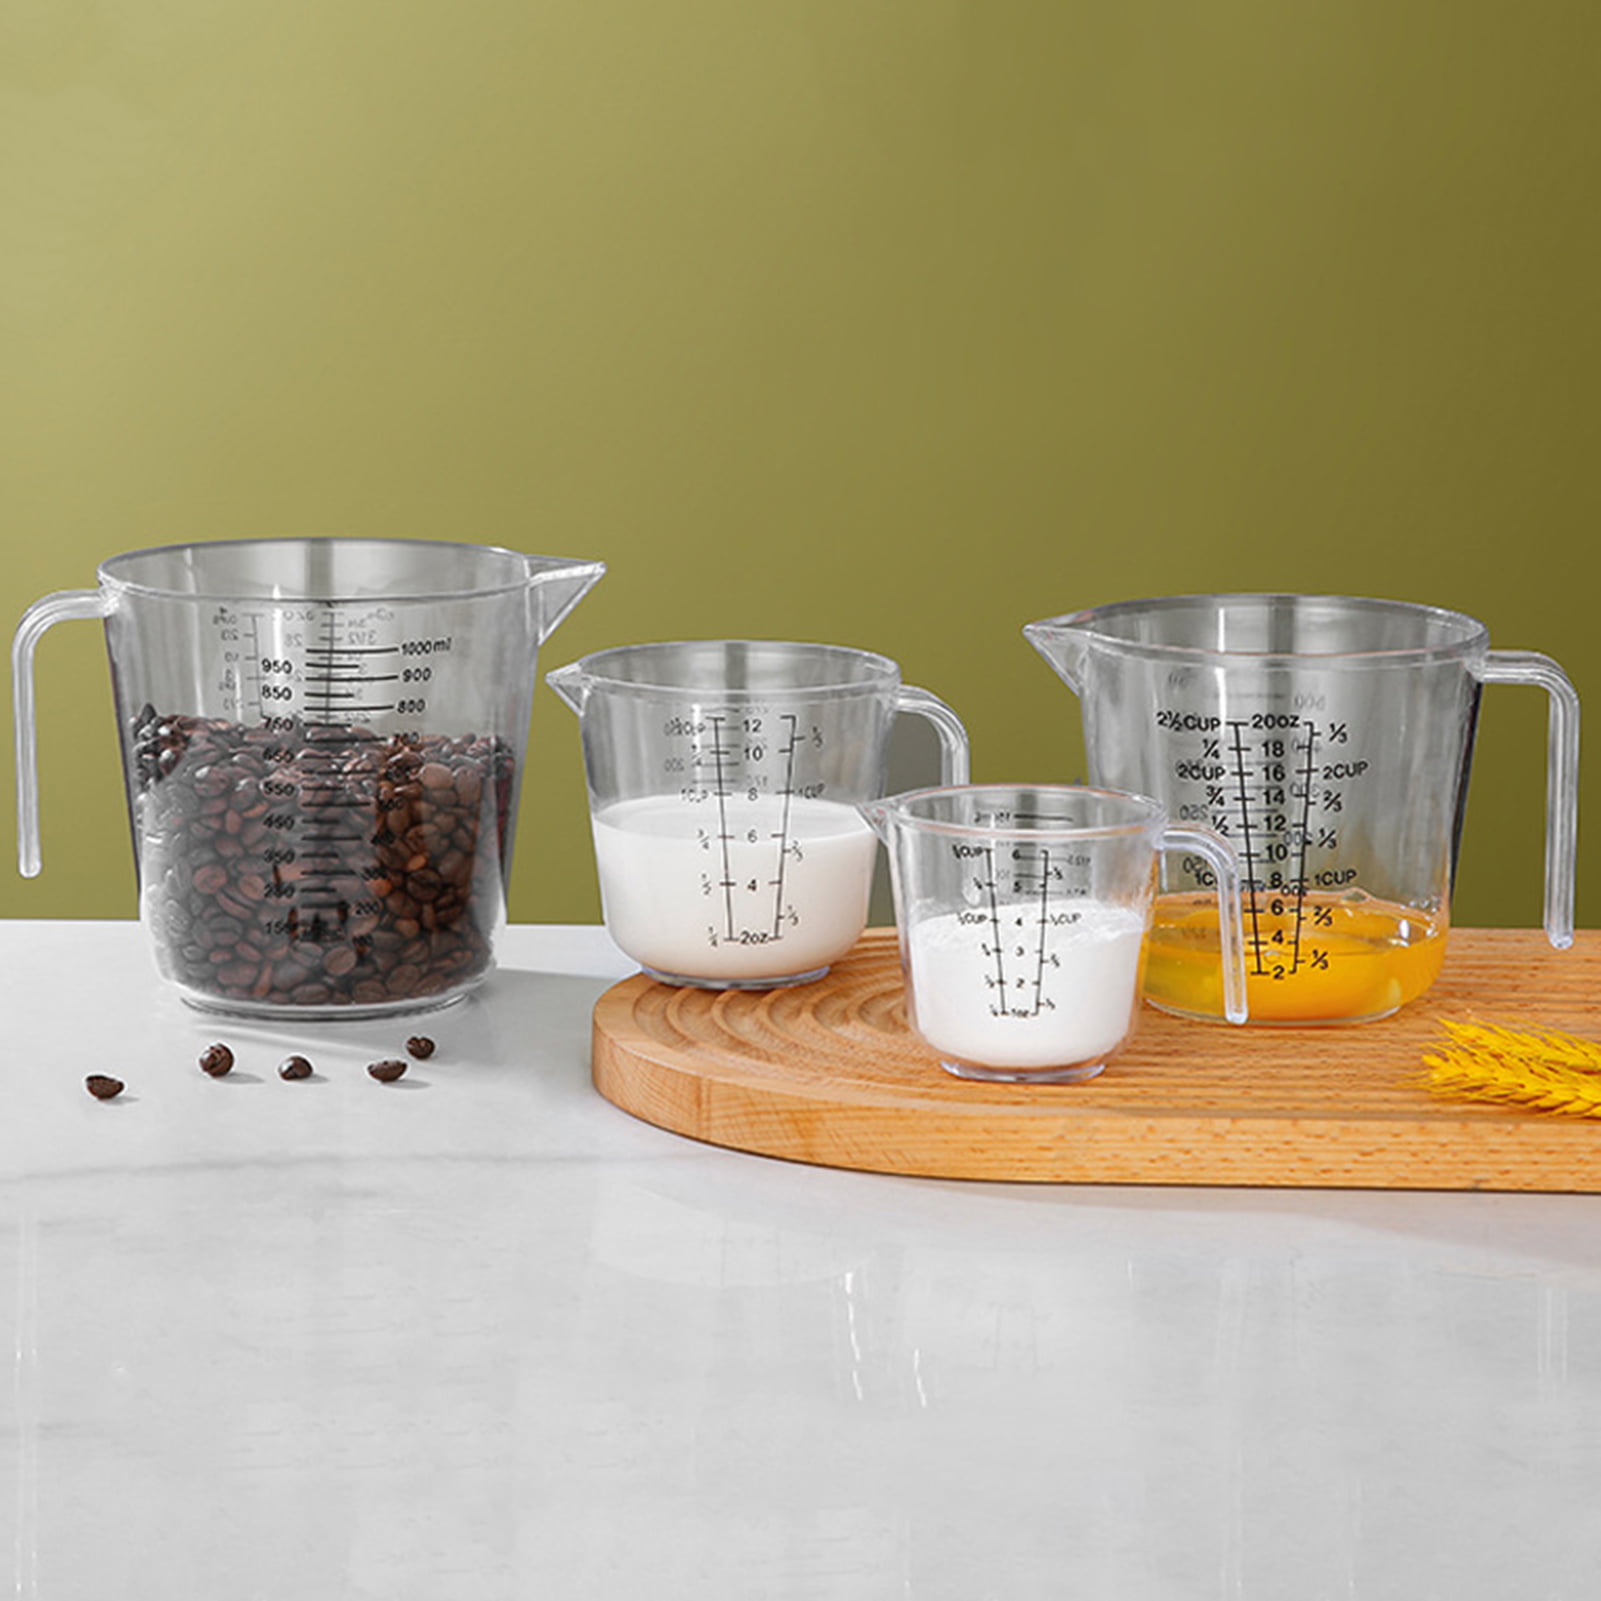 Liquid Measuring Cups - Room Essentials™